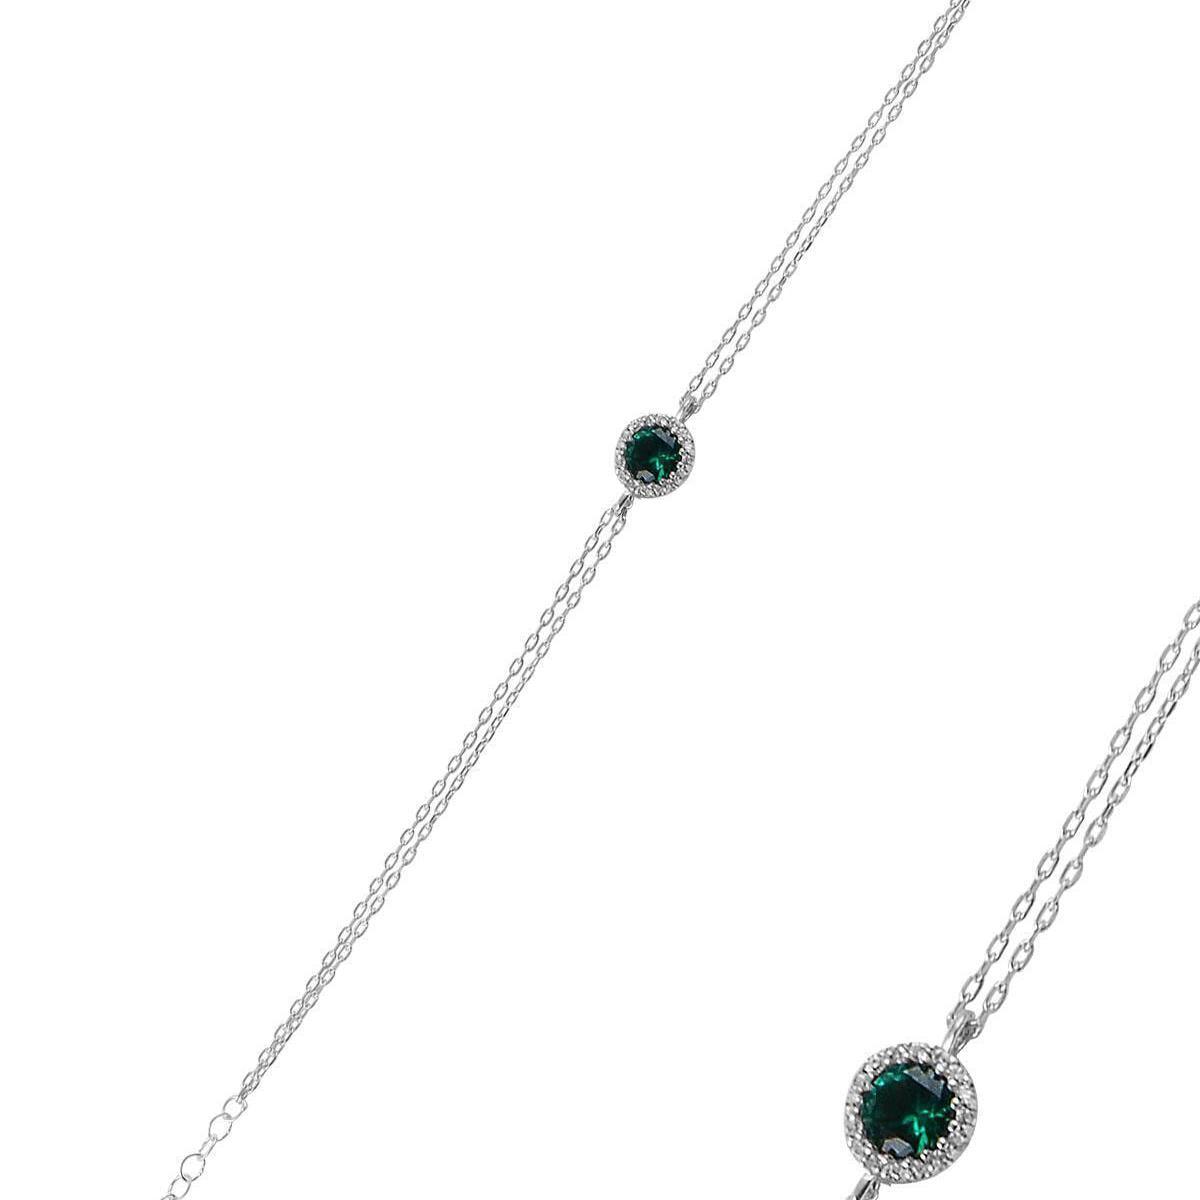 Emerald Cut Tennis Bracelet • Emerald Cut Bracelet • Green Bracelet - Trending Silver Gifts